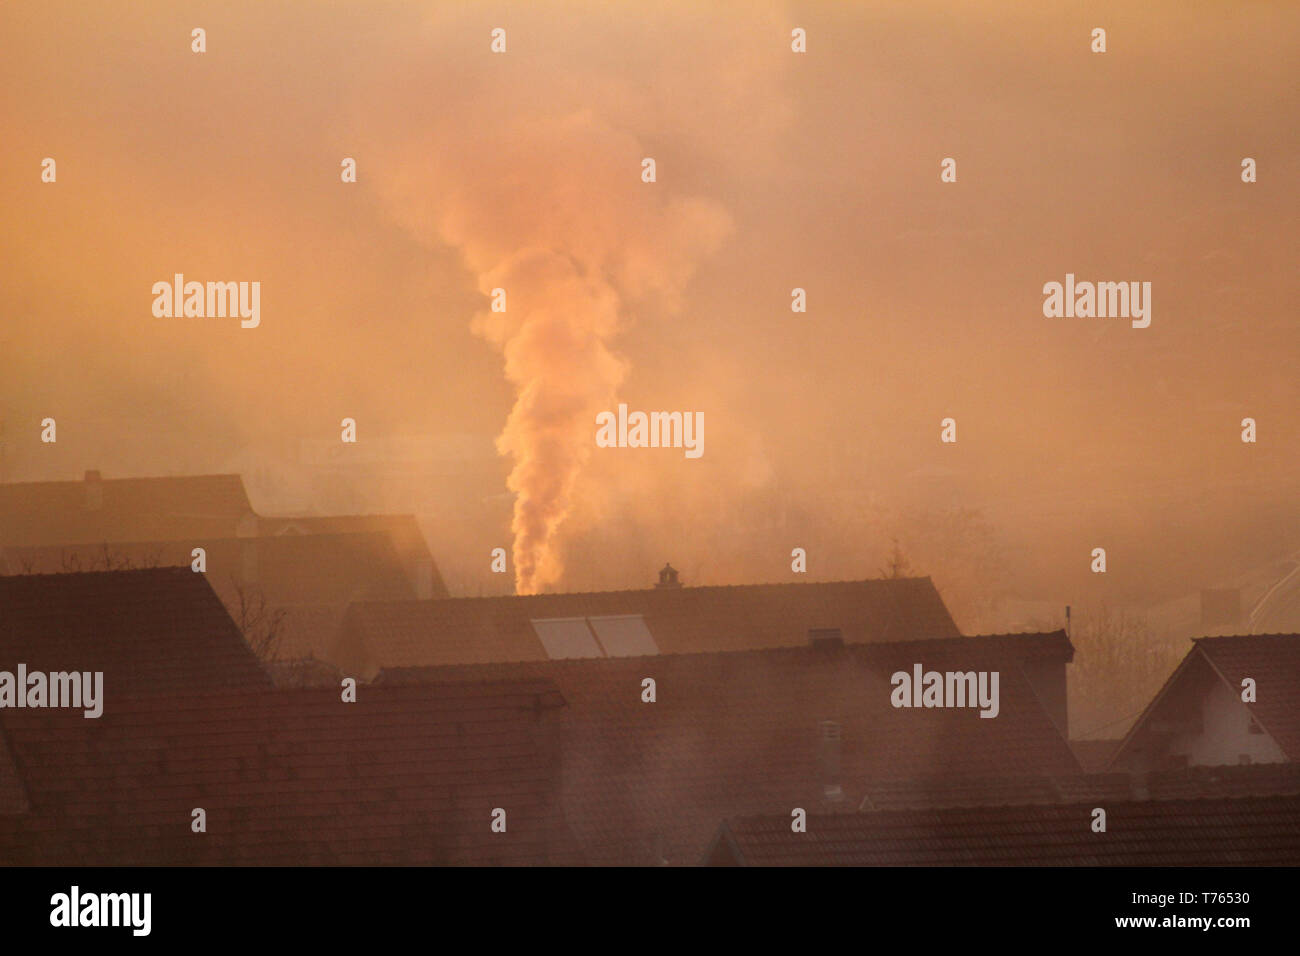 Comignoli fumanti in corrispondenza di tetti di case emette fumo, smog all'alba, inquinanti entrano nell'atmosfera. Catastrofe ambientale. Le emissioni nocive e di scarico. Foto Stock